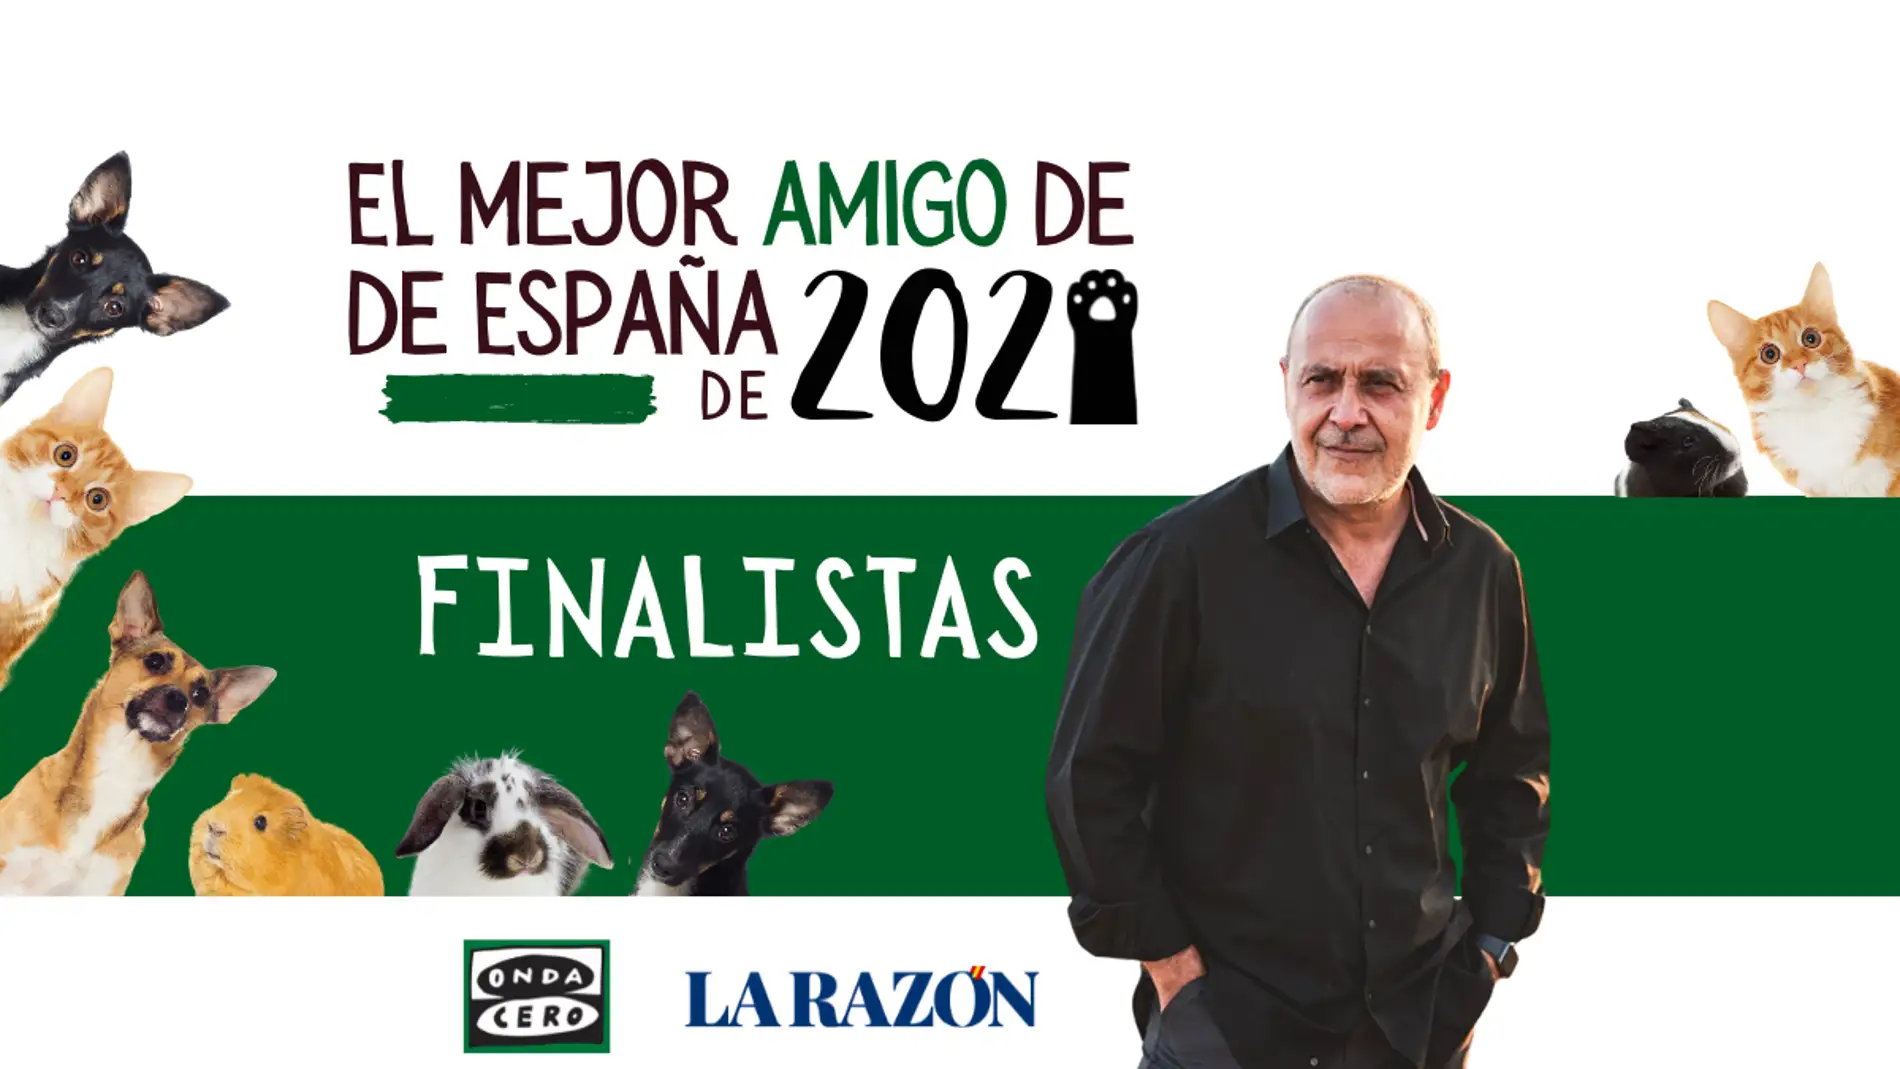 Finalistas del concurso 'El mejor amigo de España 2021'